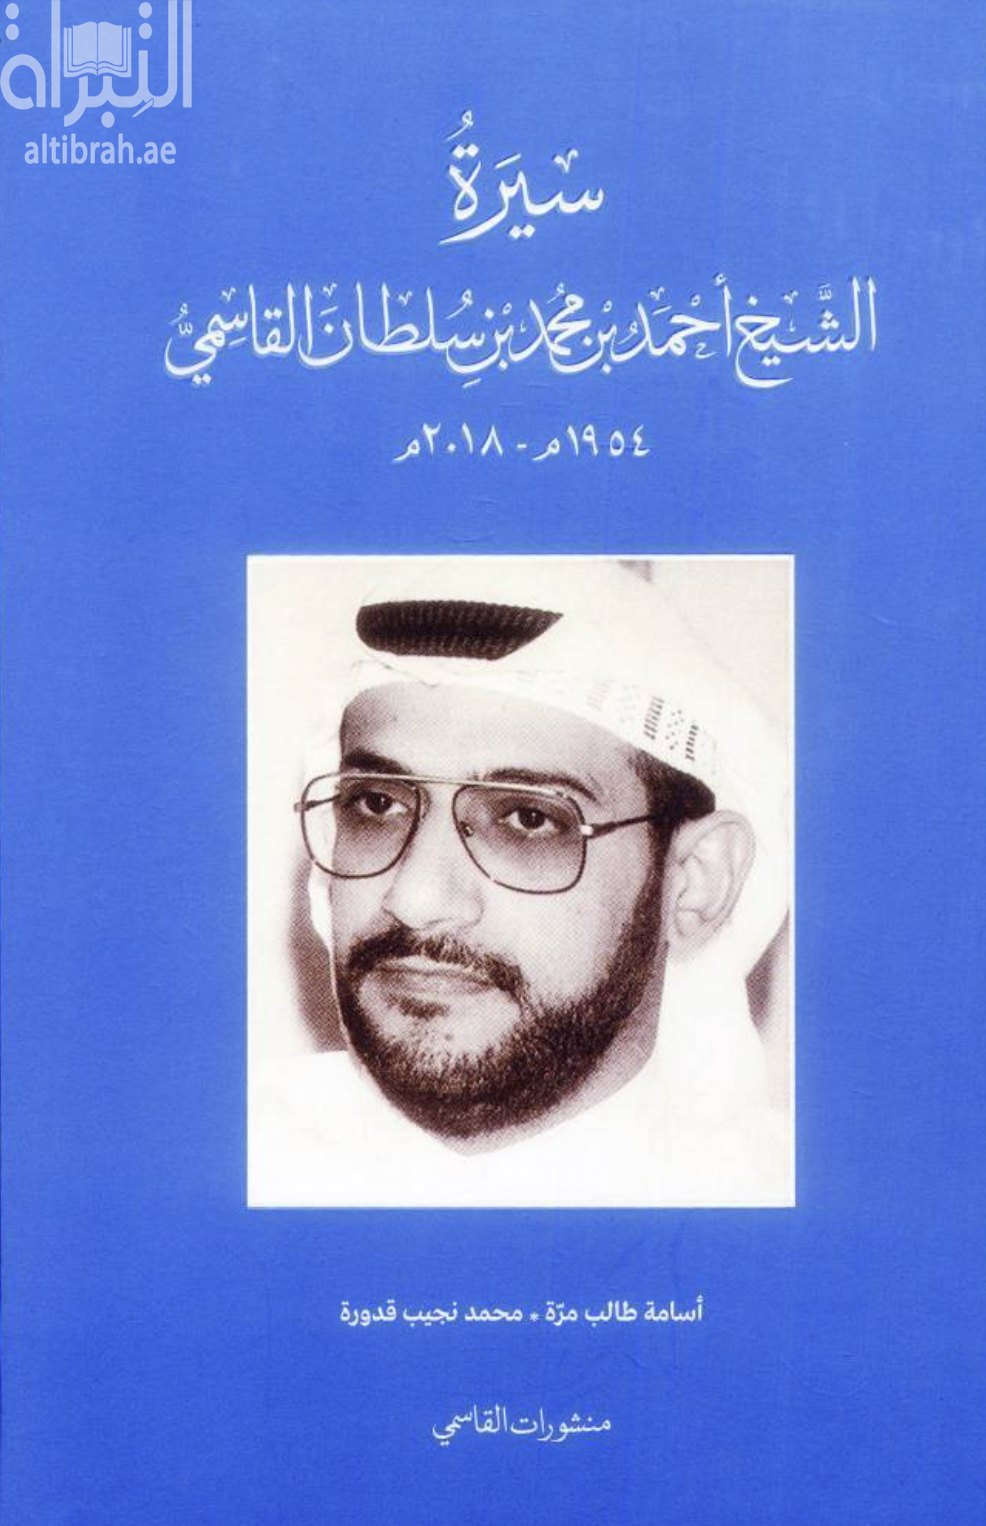 سيرة الشيخ أحمد بن محمد بن سلطان القاسمي ( 1954 - 2018 م )